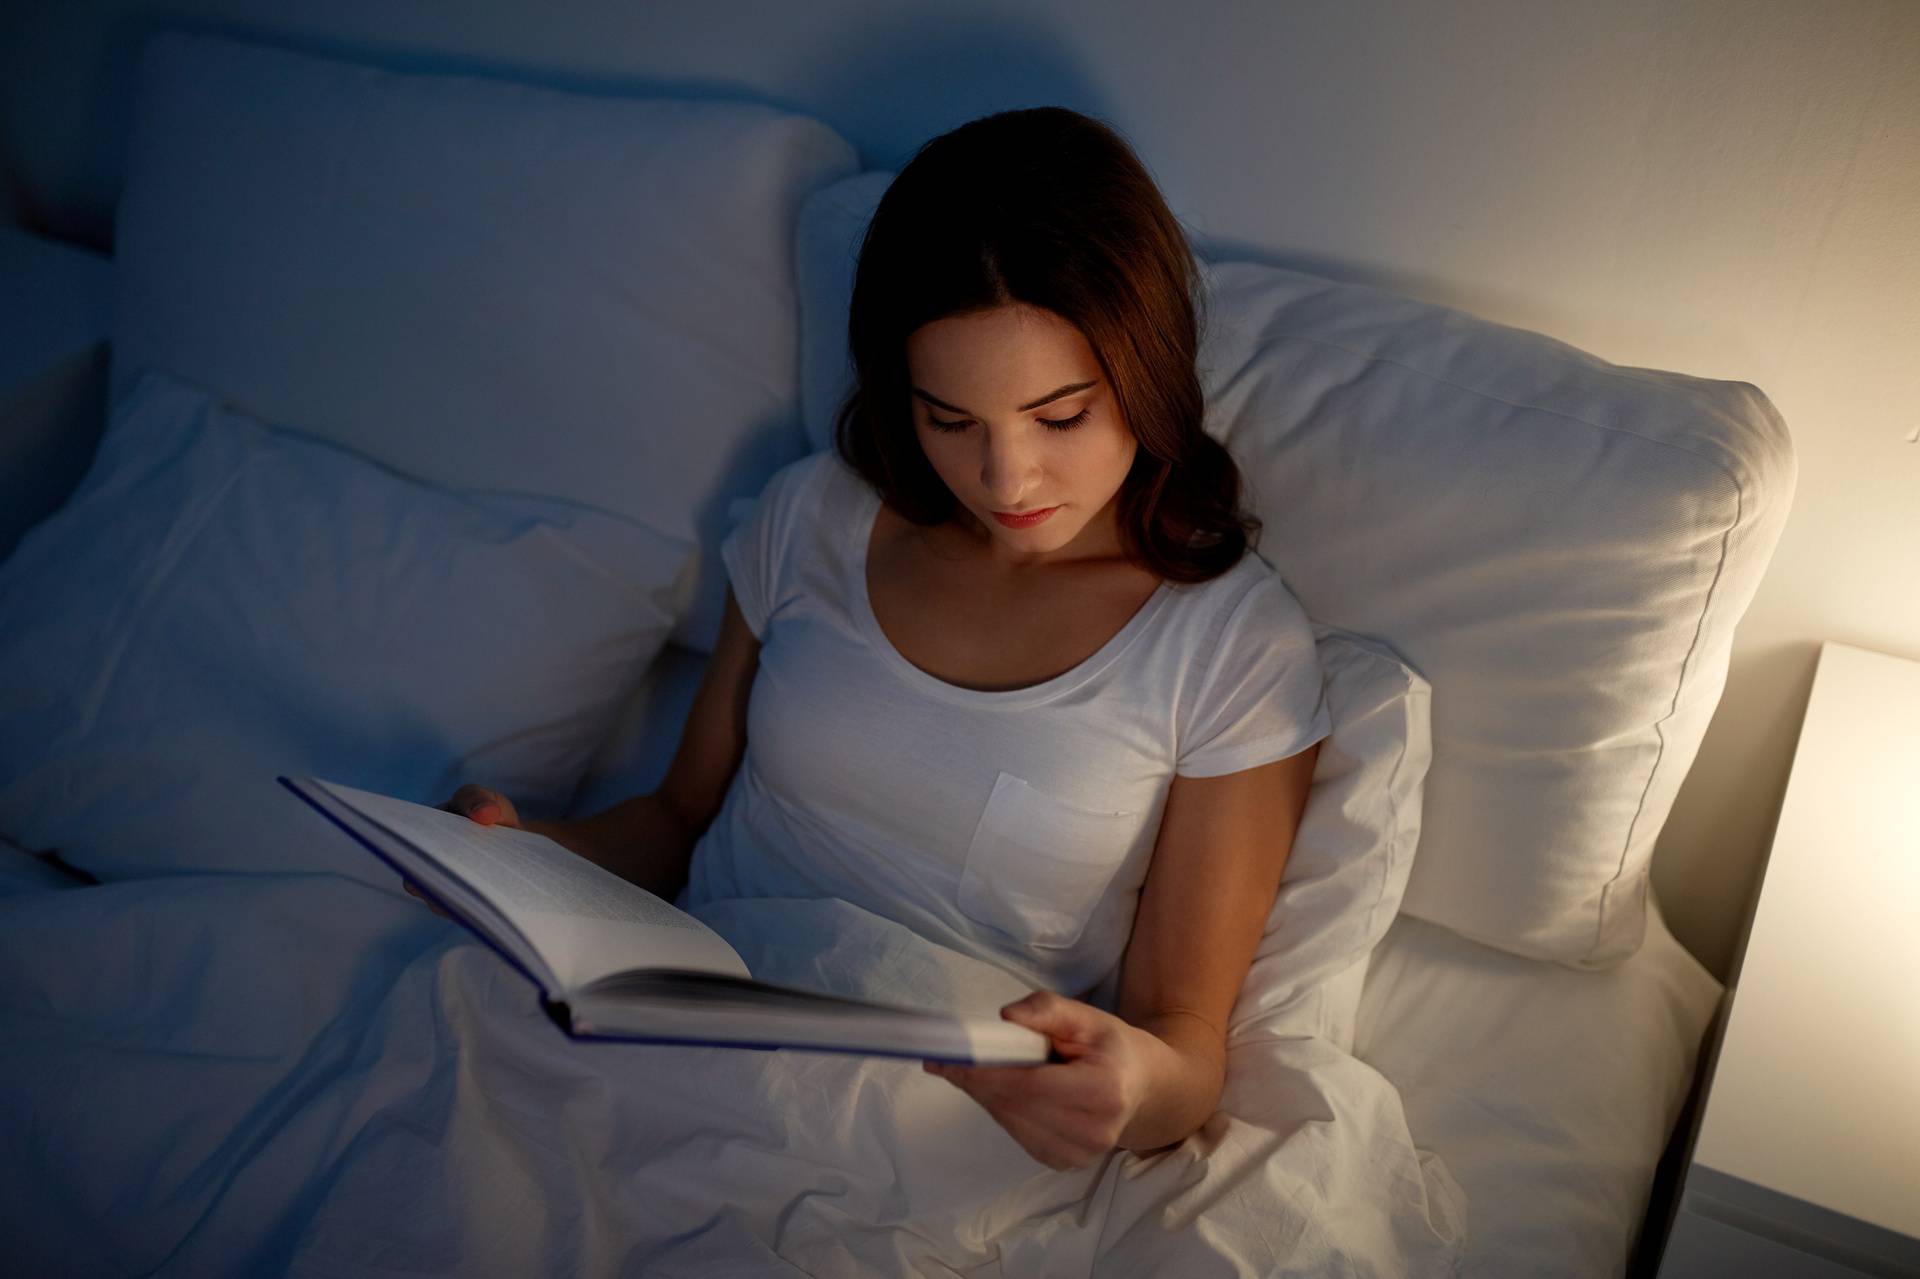 Nemojte to raditi: Čitanje knjiga se ne preporučuje u krevetu